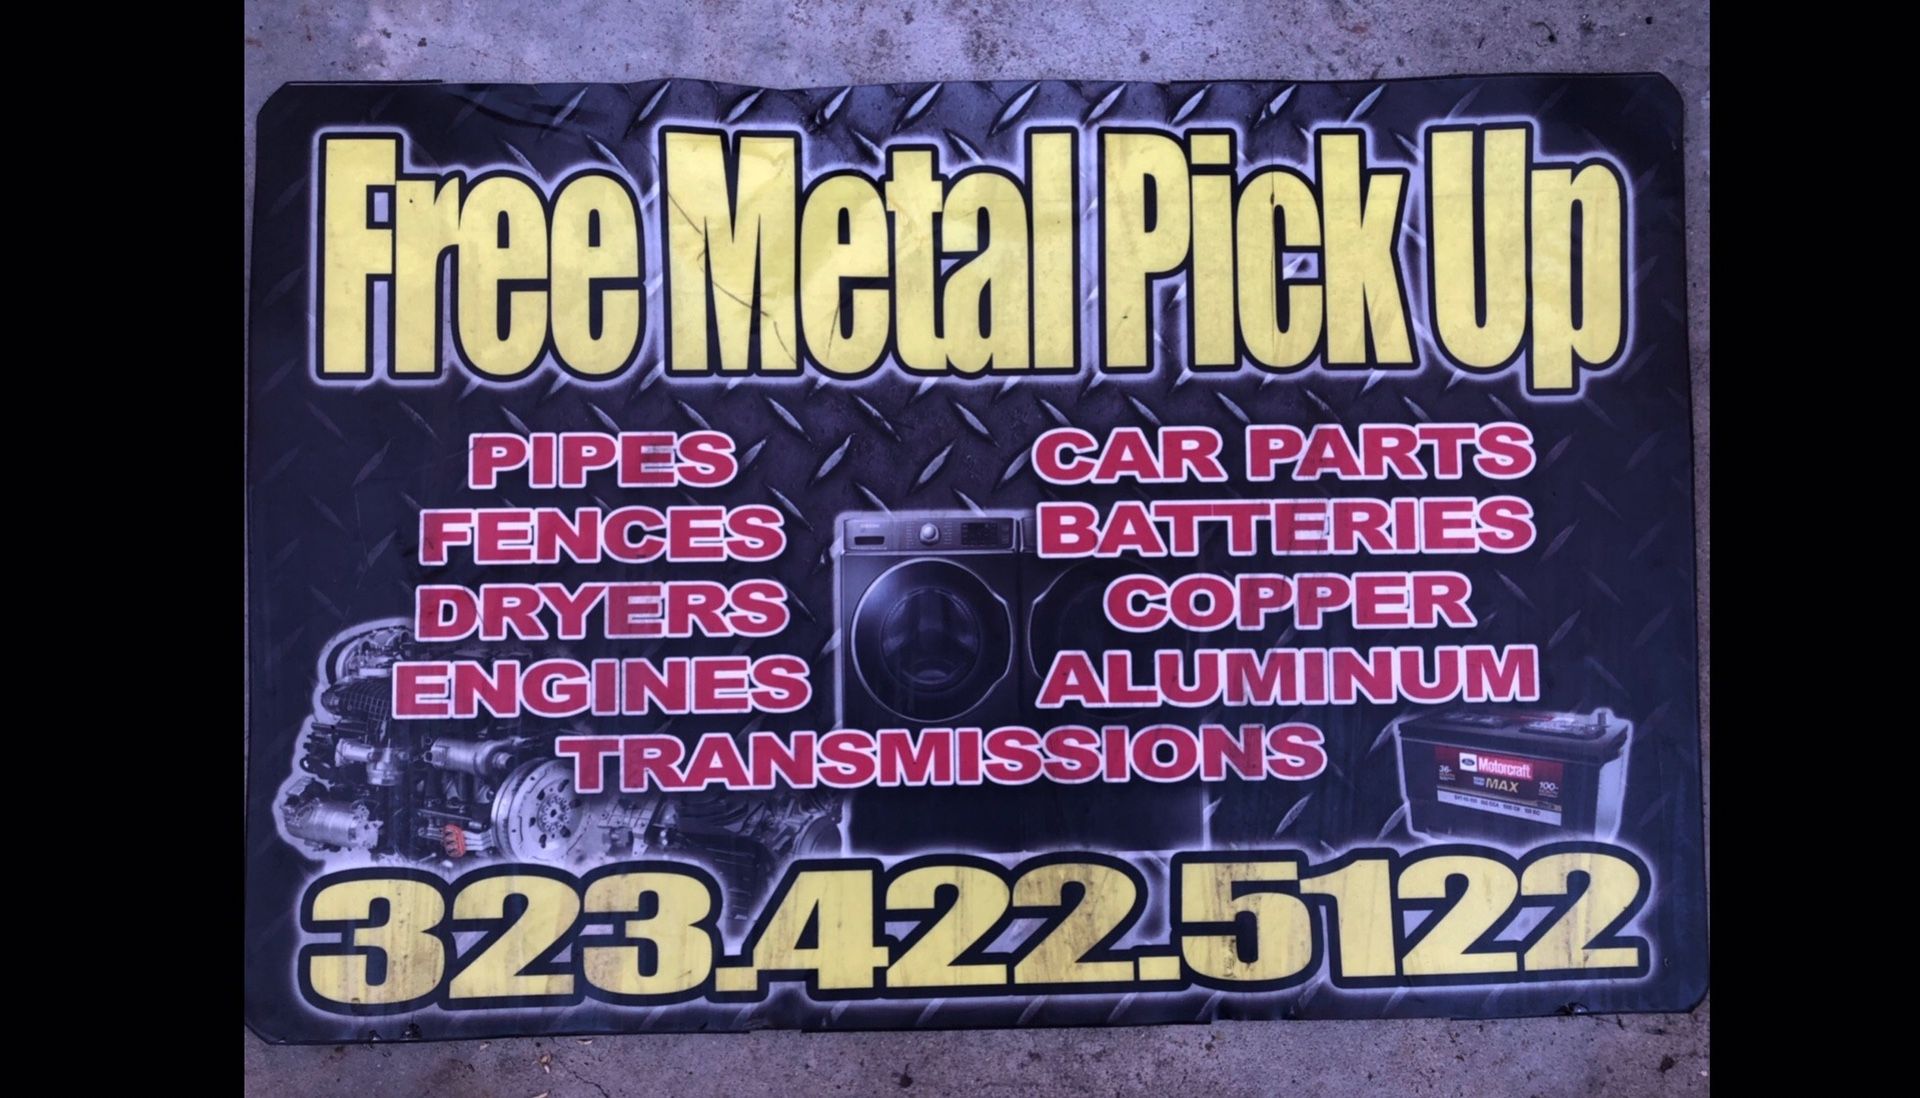 Hi we pick up scrap metal for free!!!